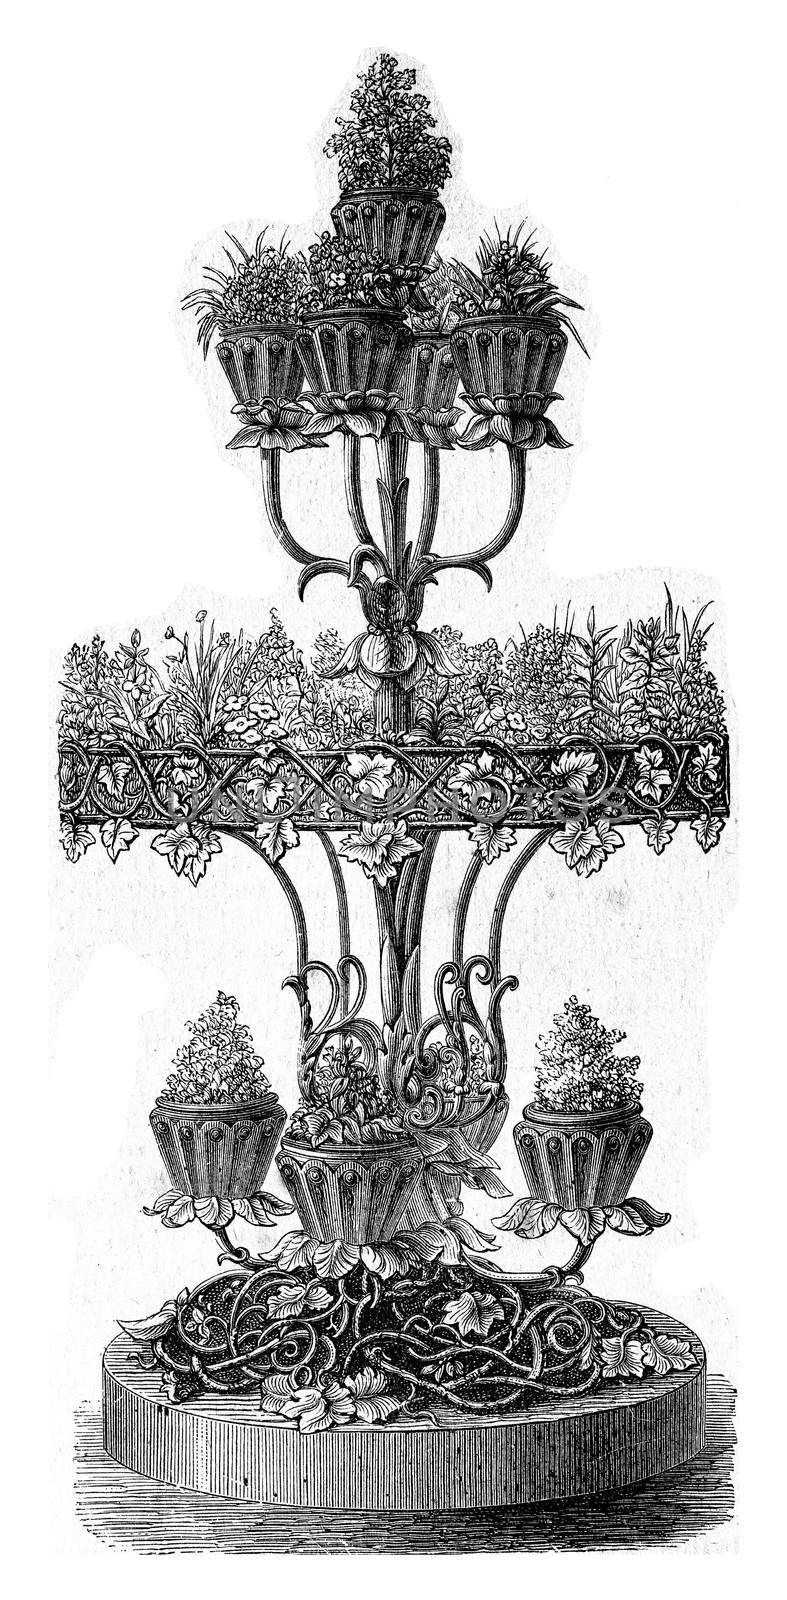 Tiered planter, vintage engraved illustration.
